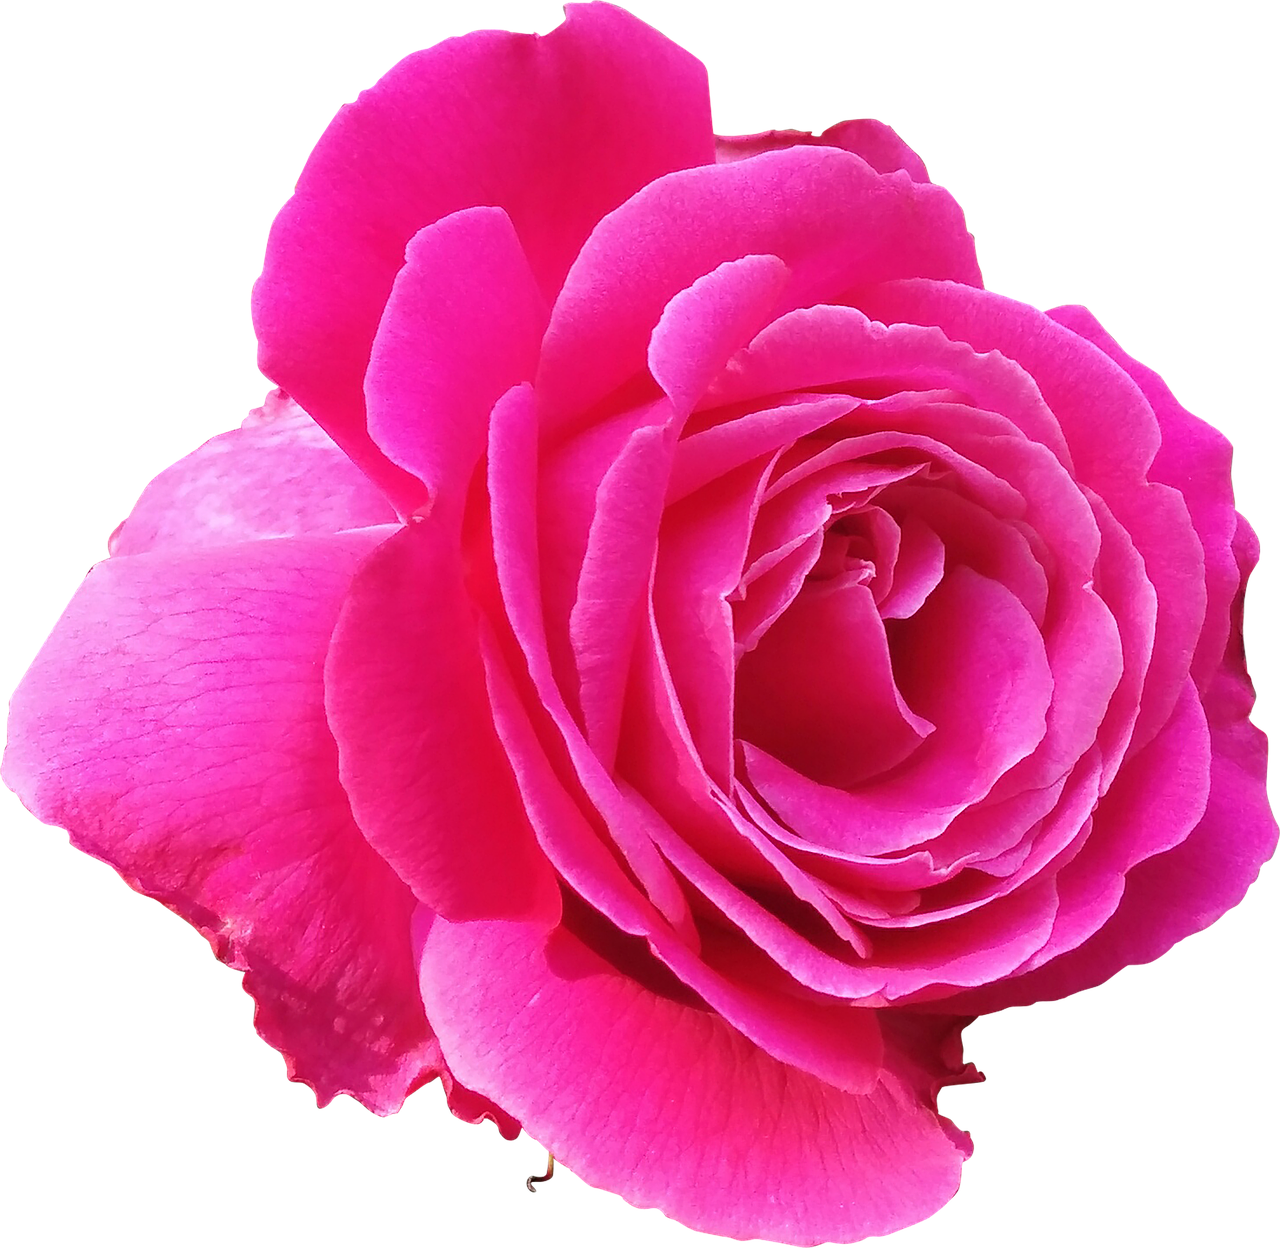 rose pink love free photo